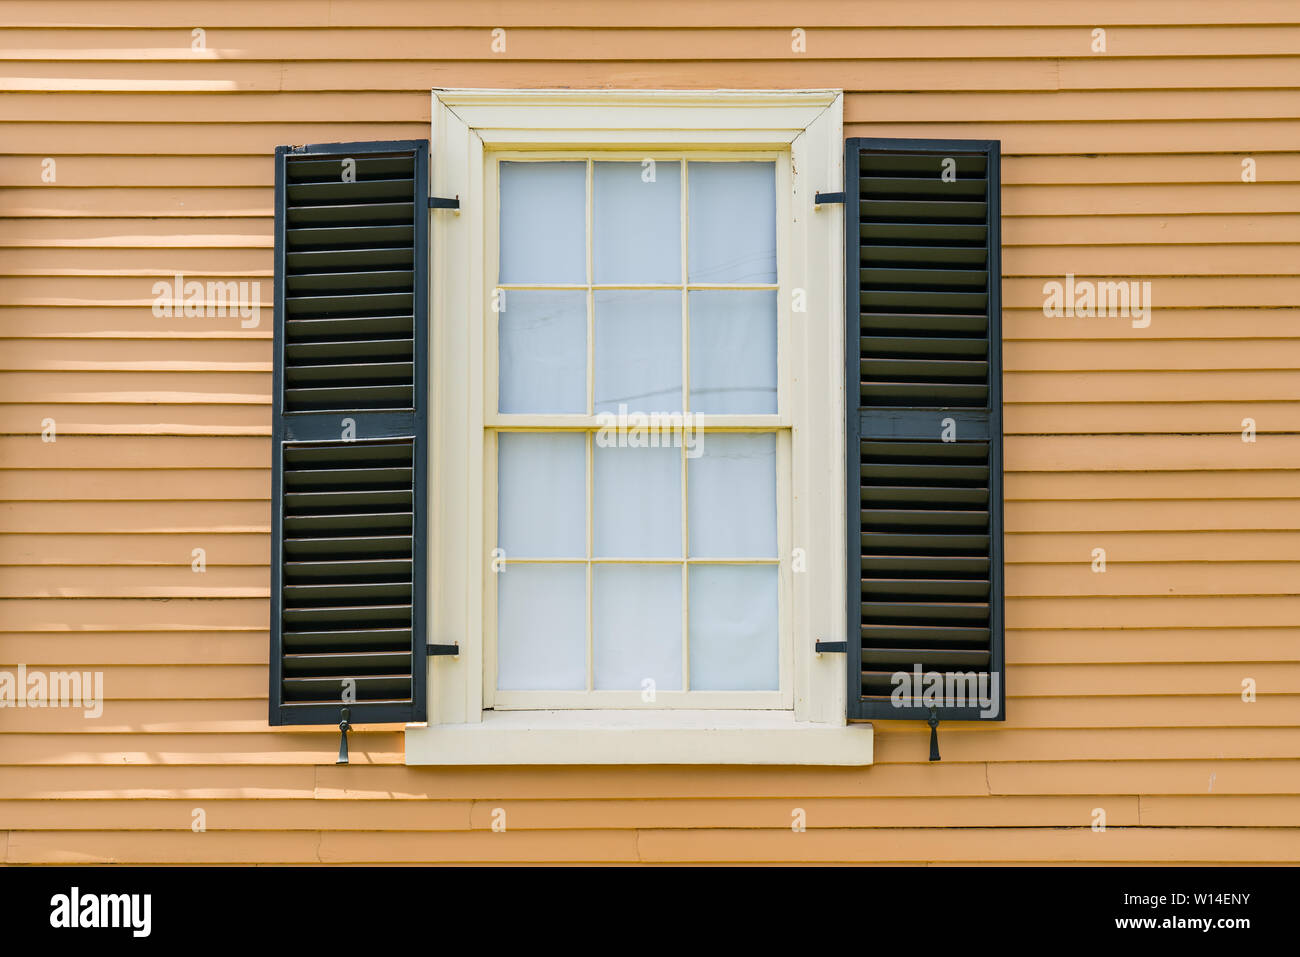 Détail de fenêtre guillotine double historique avec des volets noirs sur une maison historique de la Nouvelle Angleterre Banque D'Images